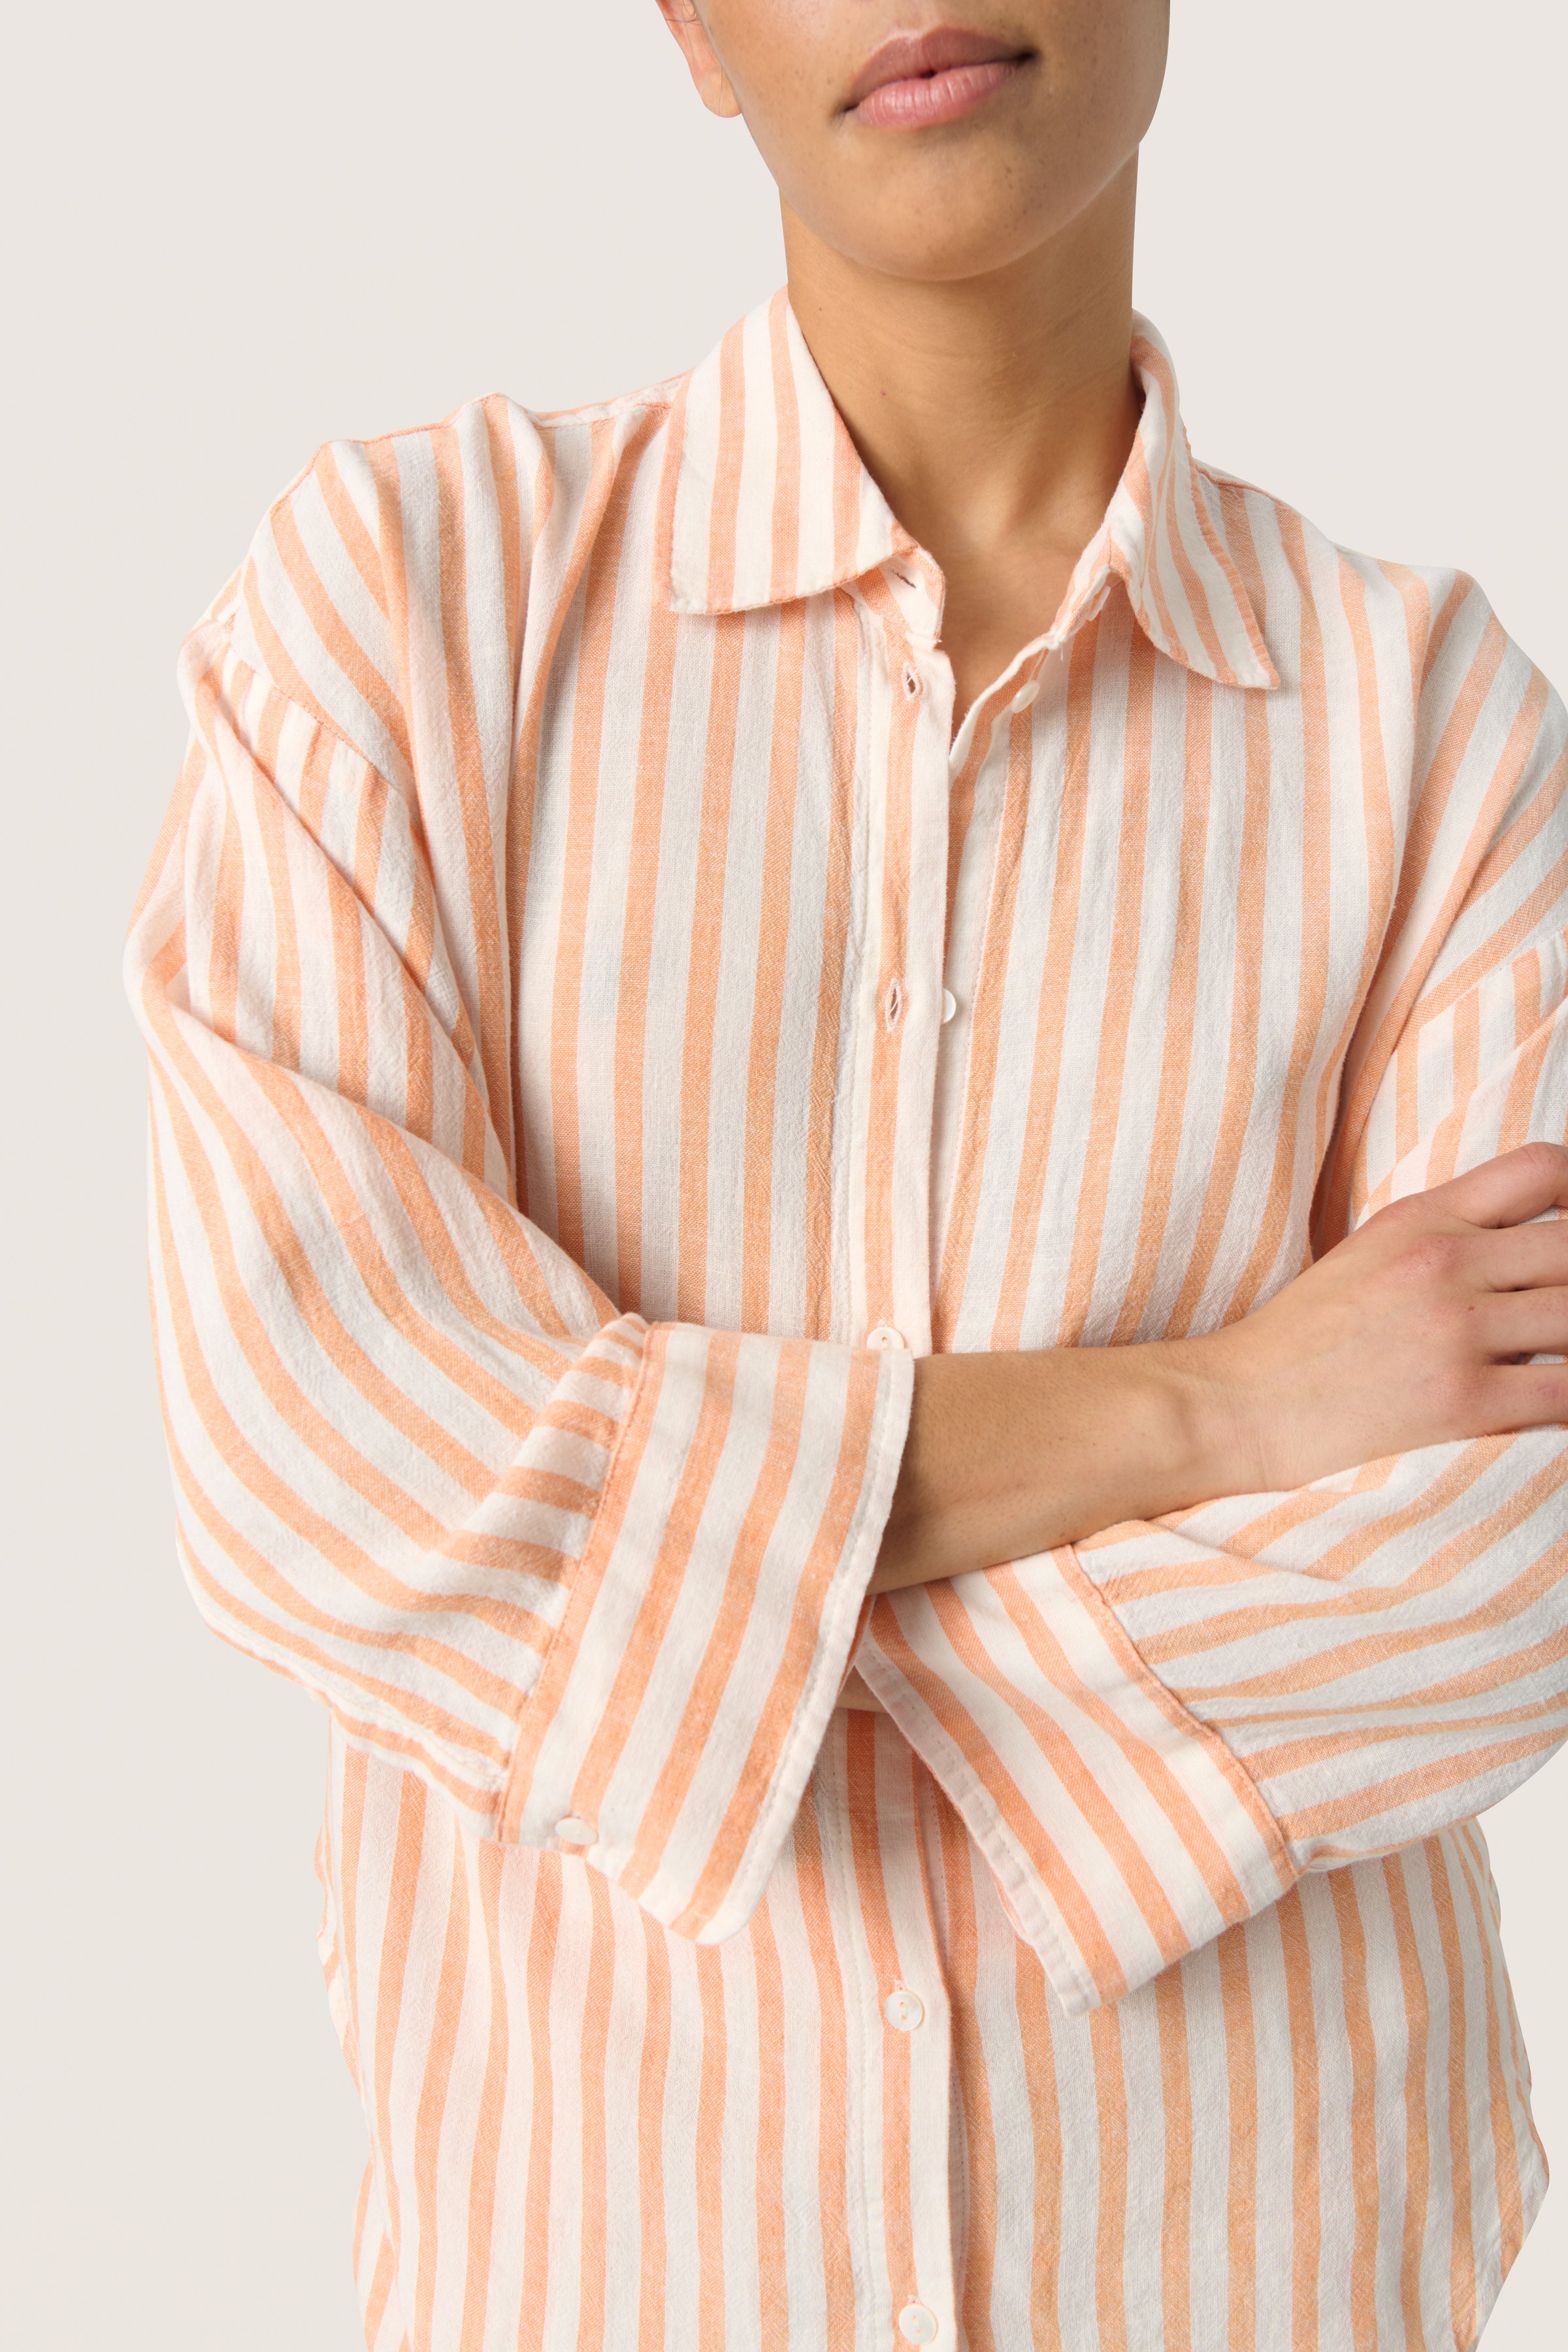 Giselle Hela Shirt Tangerine Stripe